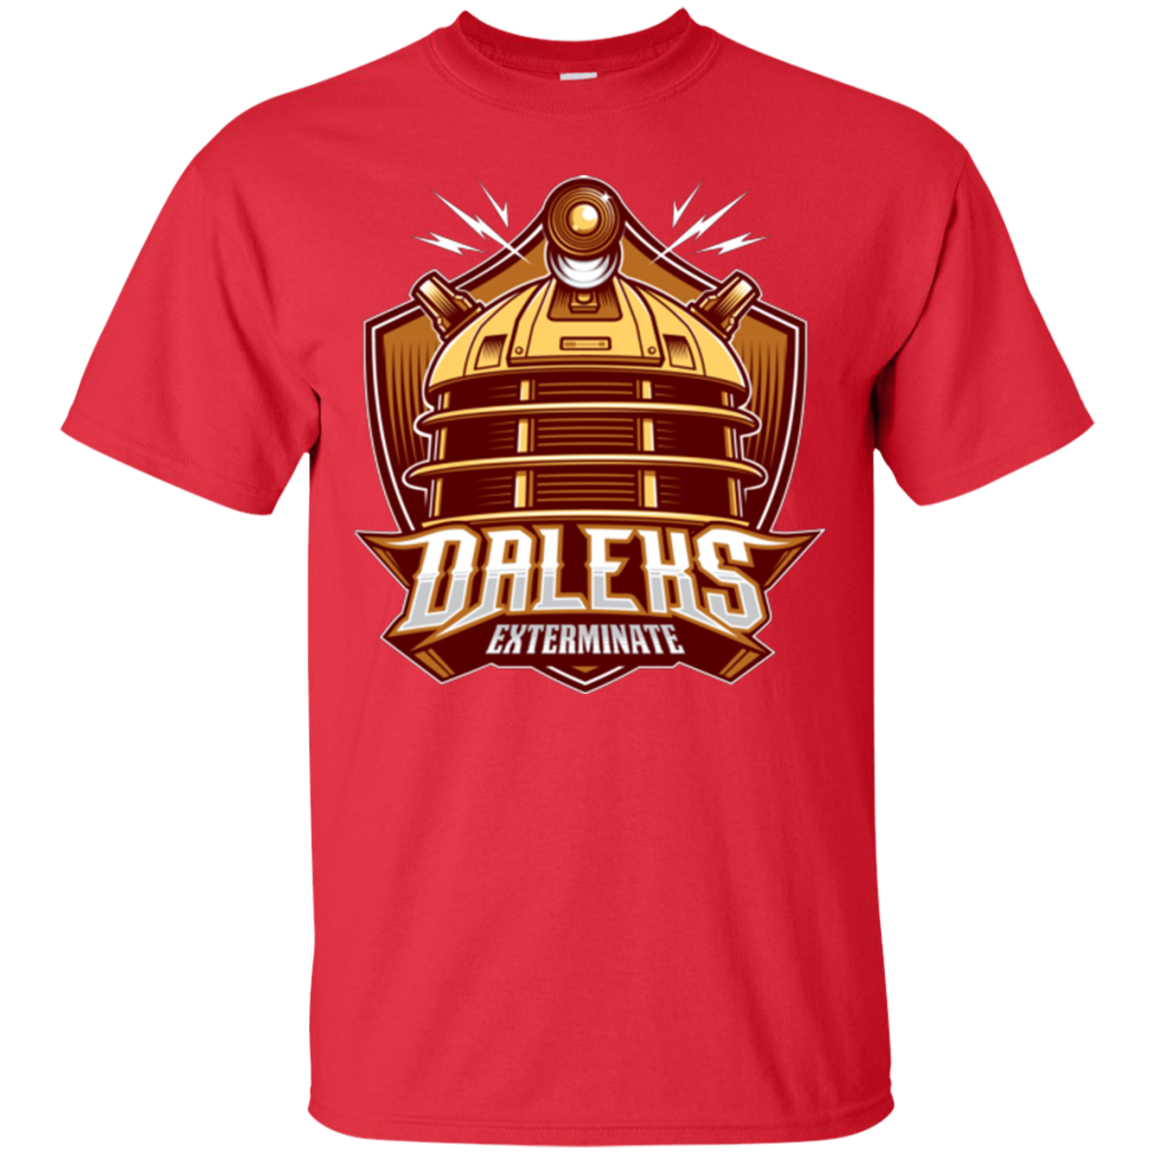 Dr. Who Daleks T-Shirt